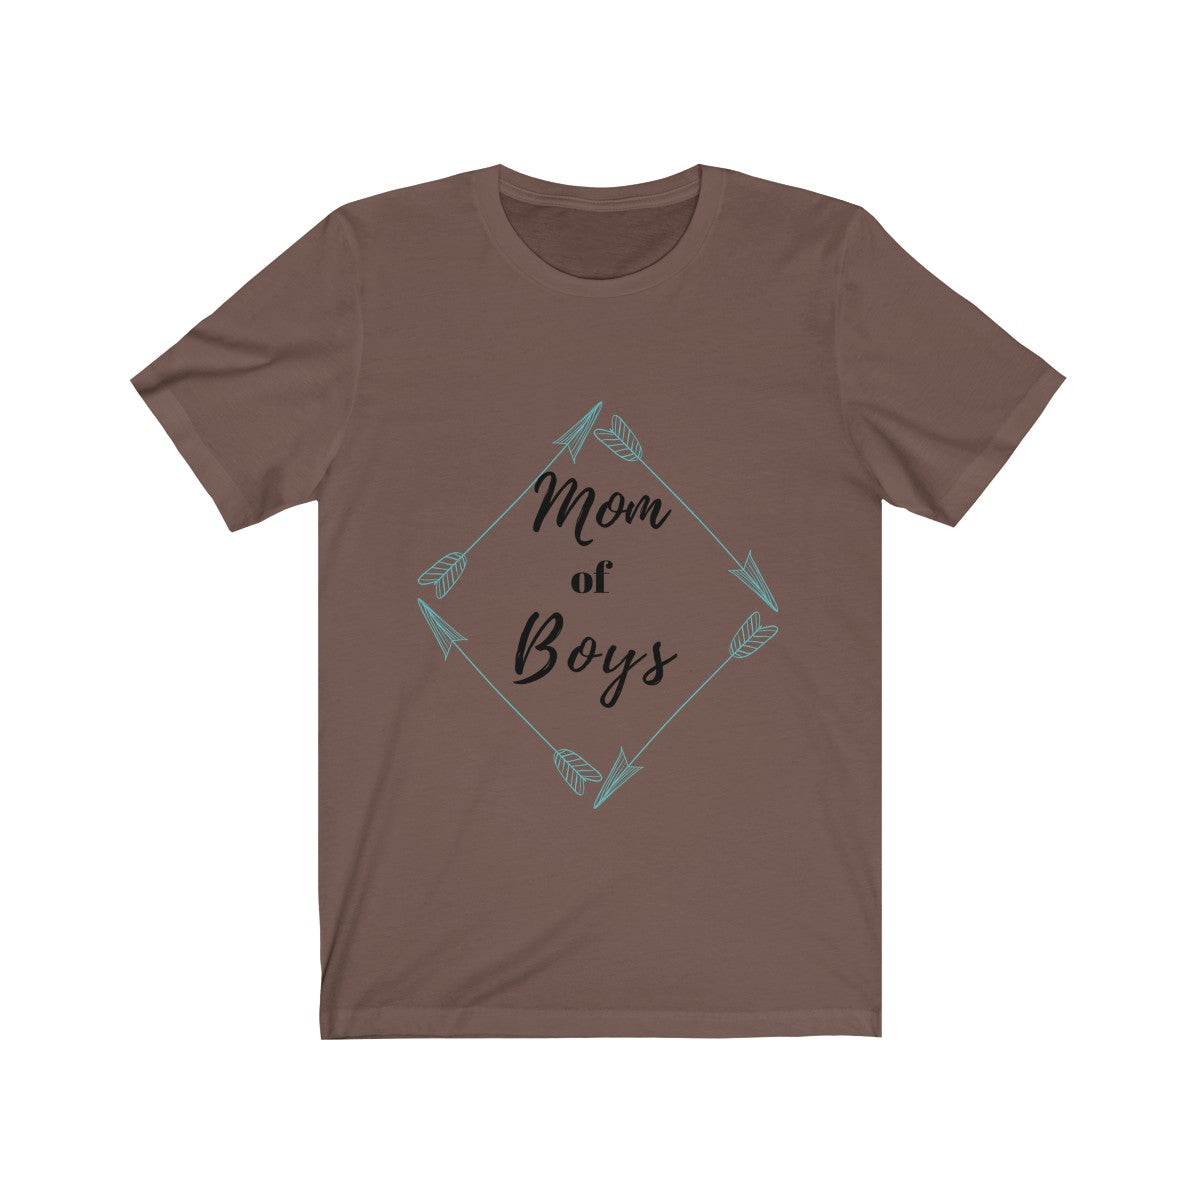 Mom of Boys Tee| Mom of Boys Tshirt| Mom of Boys Shirt